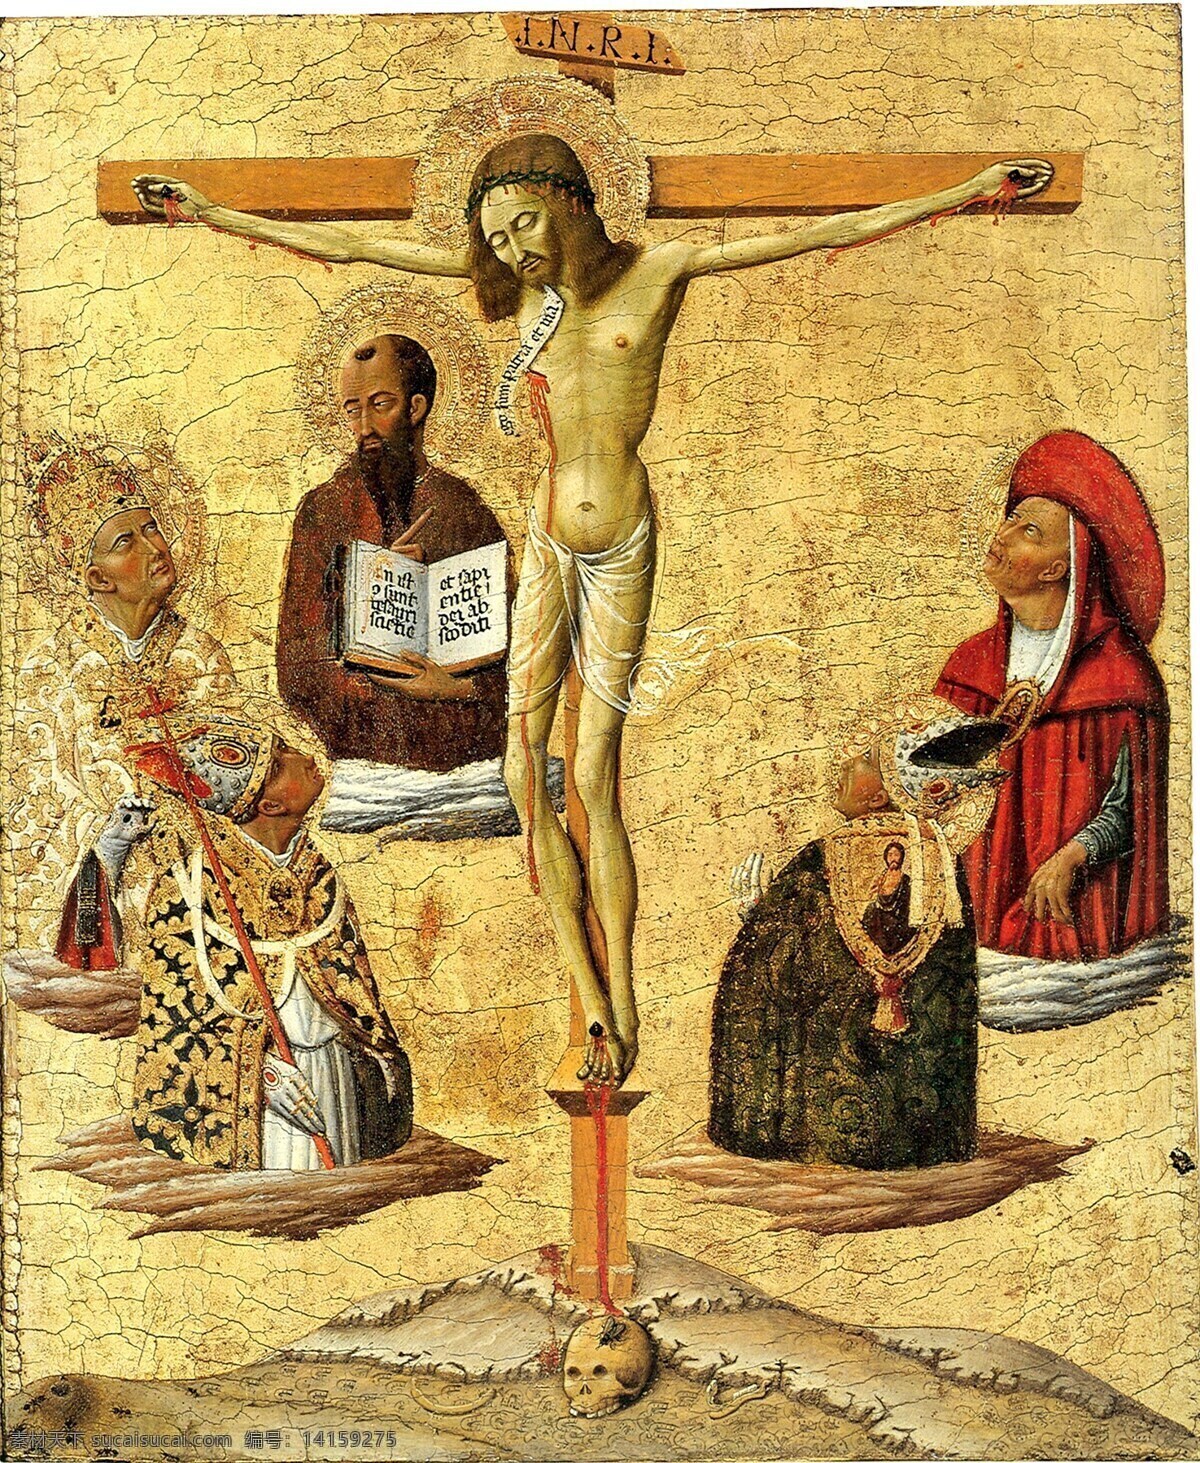 绘画书法 基督教 十字架 文化艺术 耶稣 油画 油画人物 设计素材 模板下载 基督教油画 宗教 母基督 受难 主 家居装饰素材